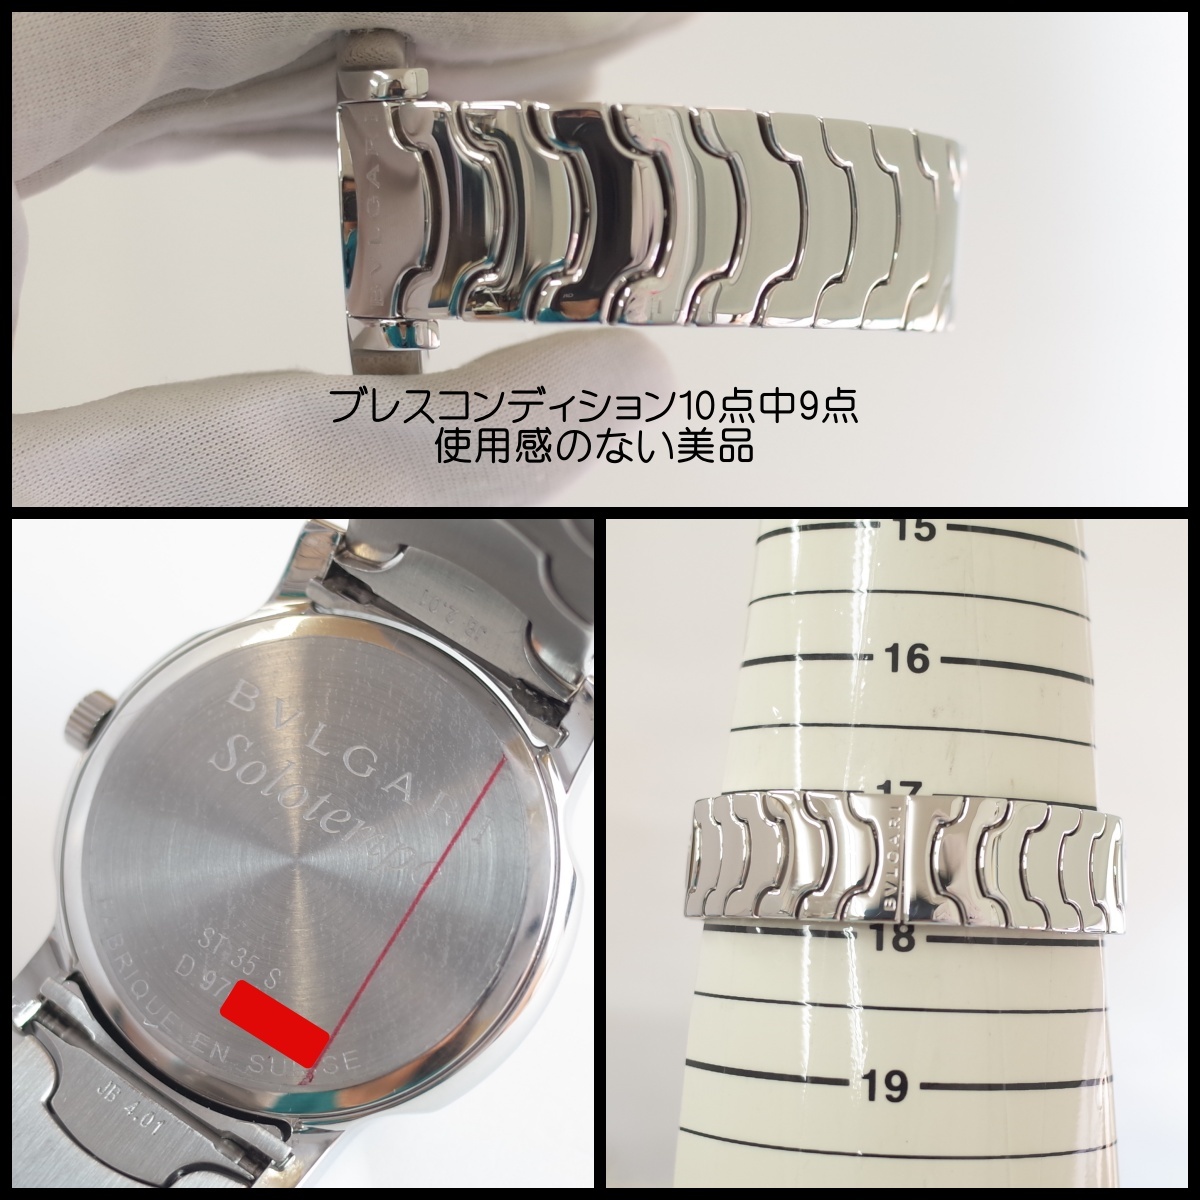 良品 ブルガリ ソロテンポ ST35S 35ミリ径 白文字盤 ブレスレット美品 メンズ クォーツ 腕時計 BVLGARI 安心1年保証 OH済